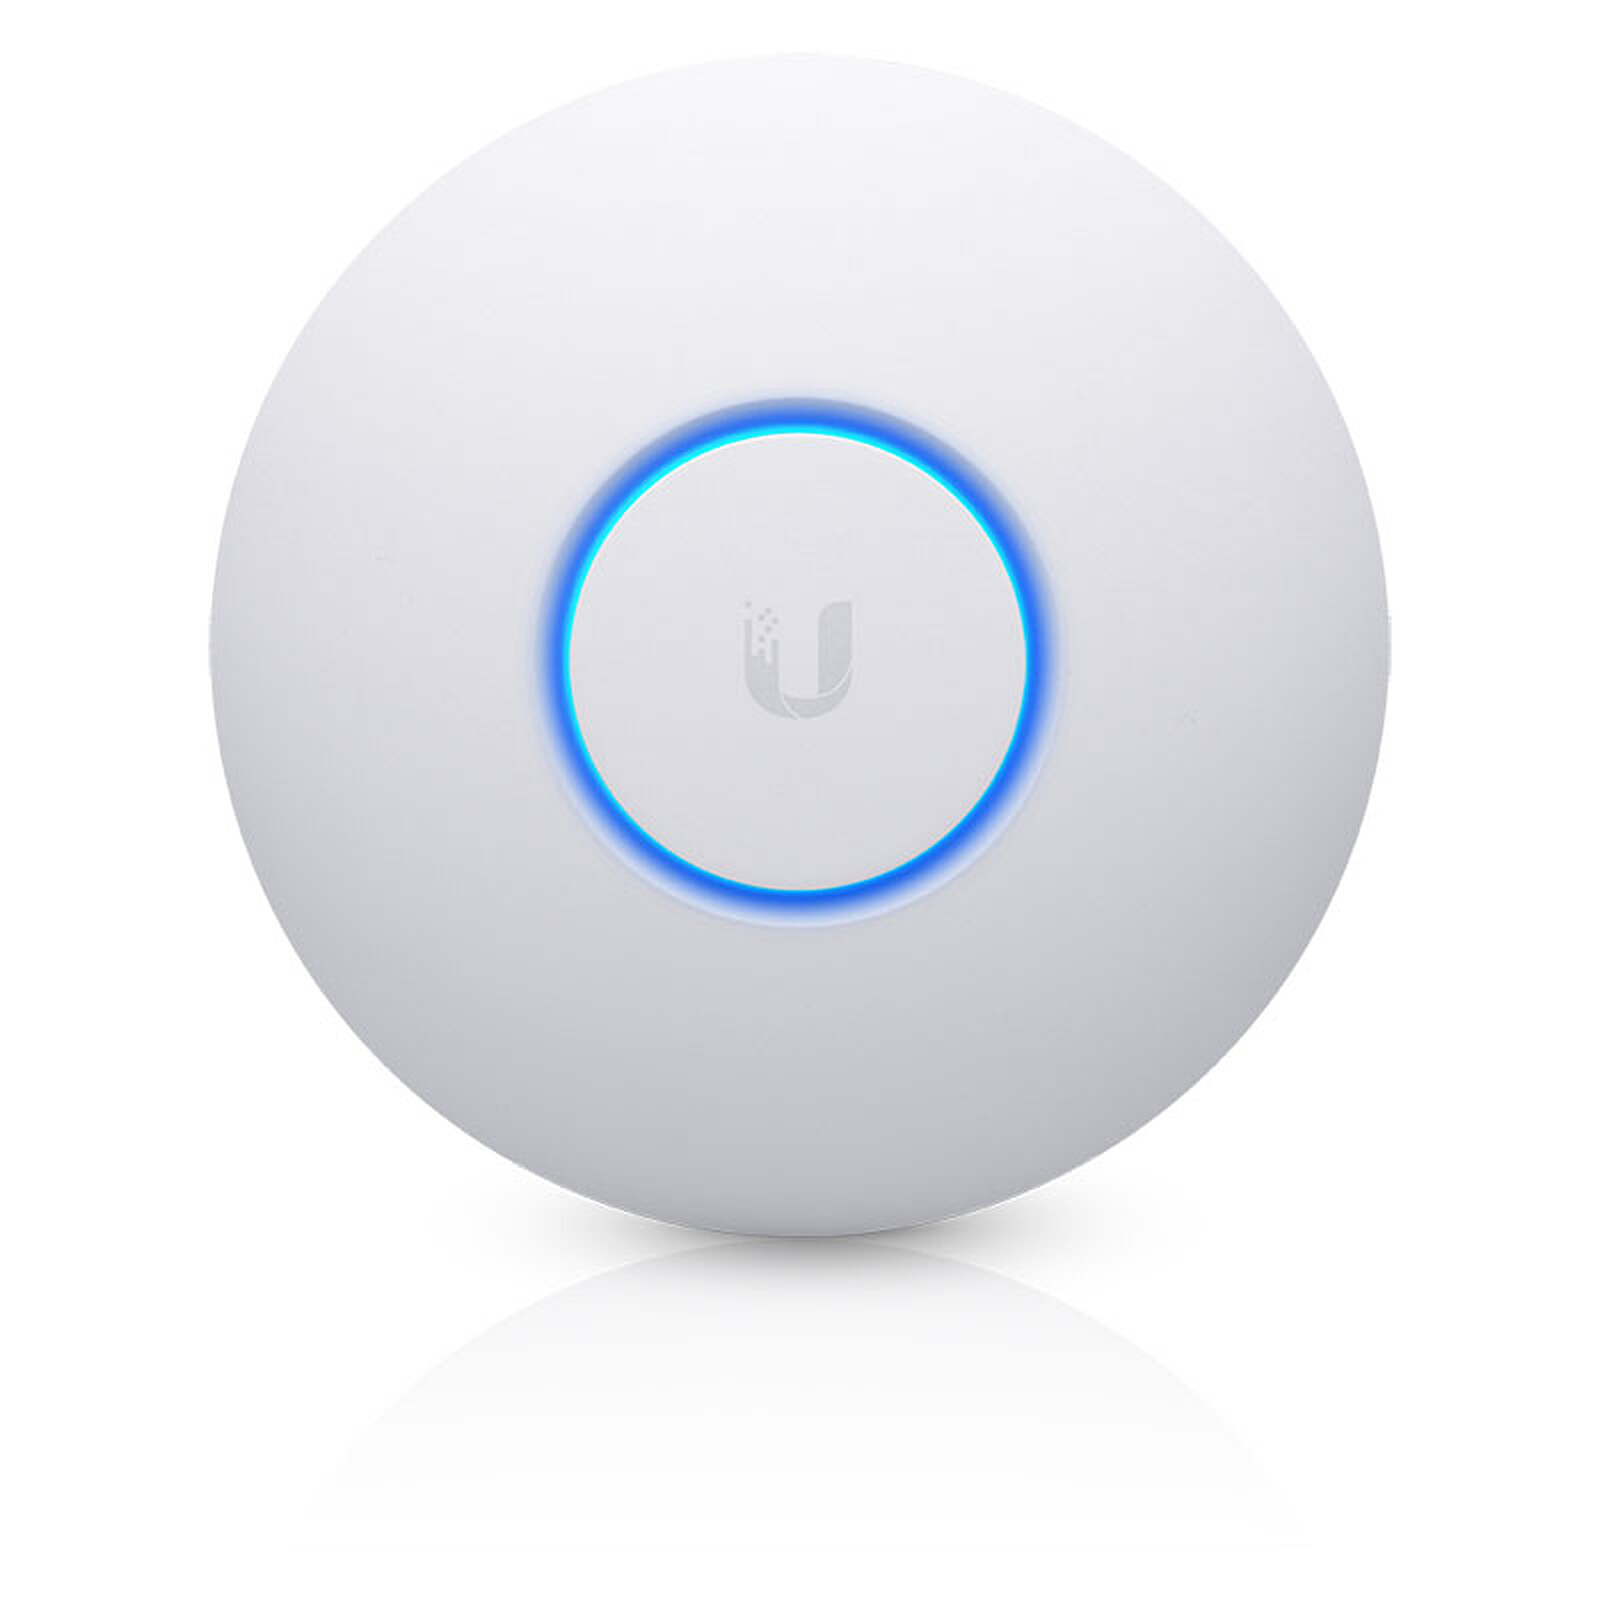 Ubiquiti Unifi UAP-nanoHD - Point d'accès WiFi Ubiquiti sur LDLC